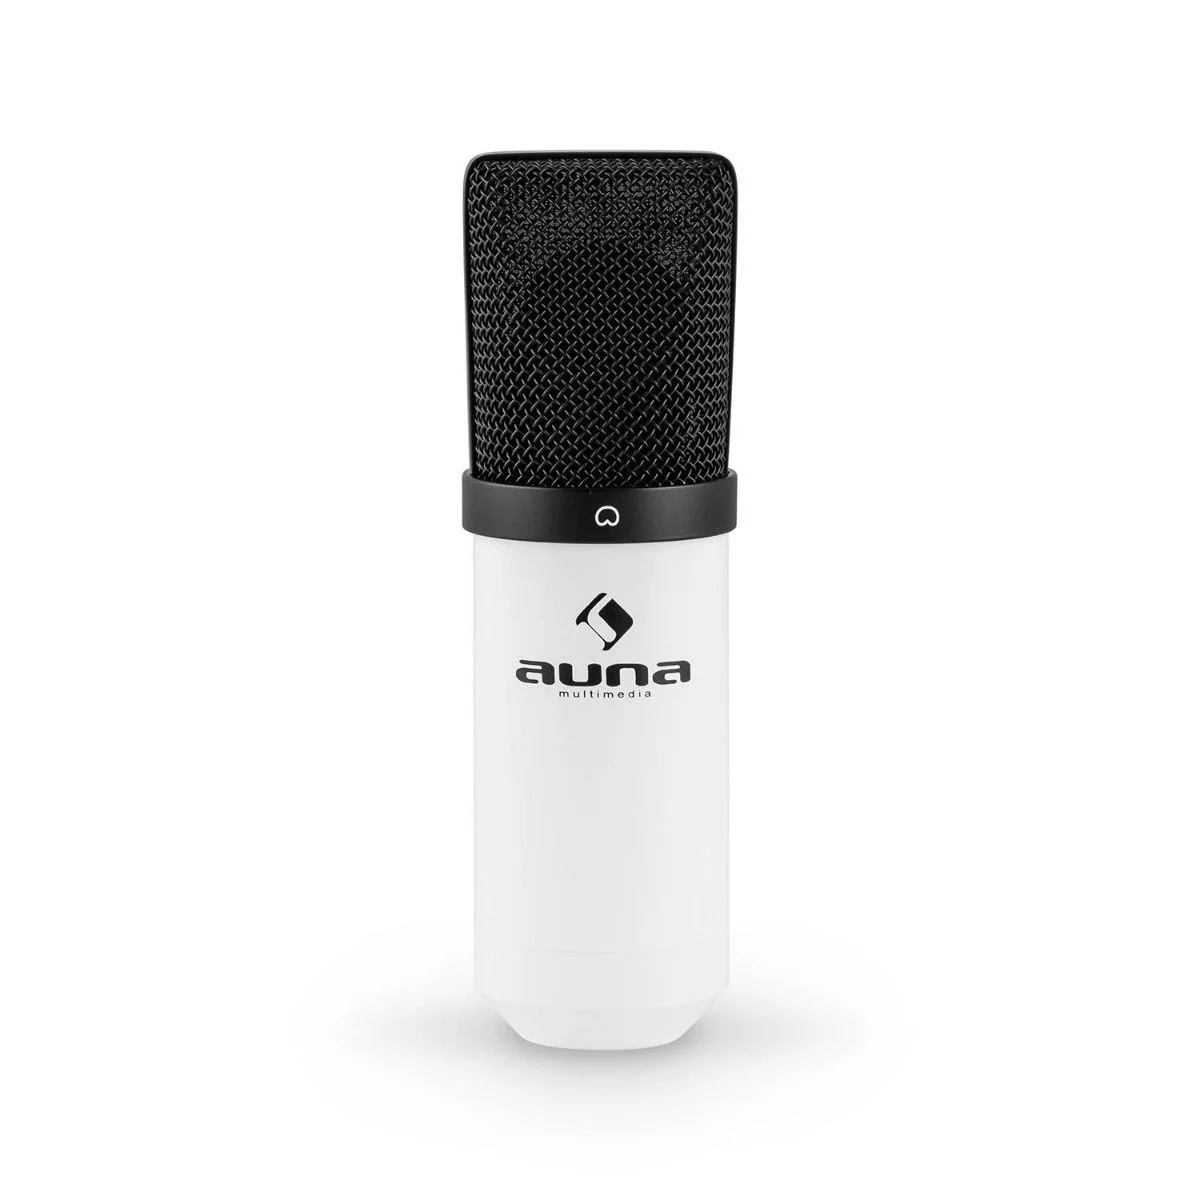 Auna mic 900wh witte usb studio condensator microfoon met shockmount 6